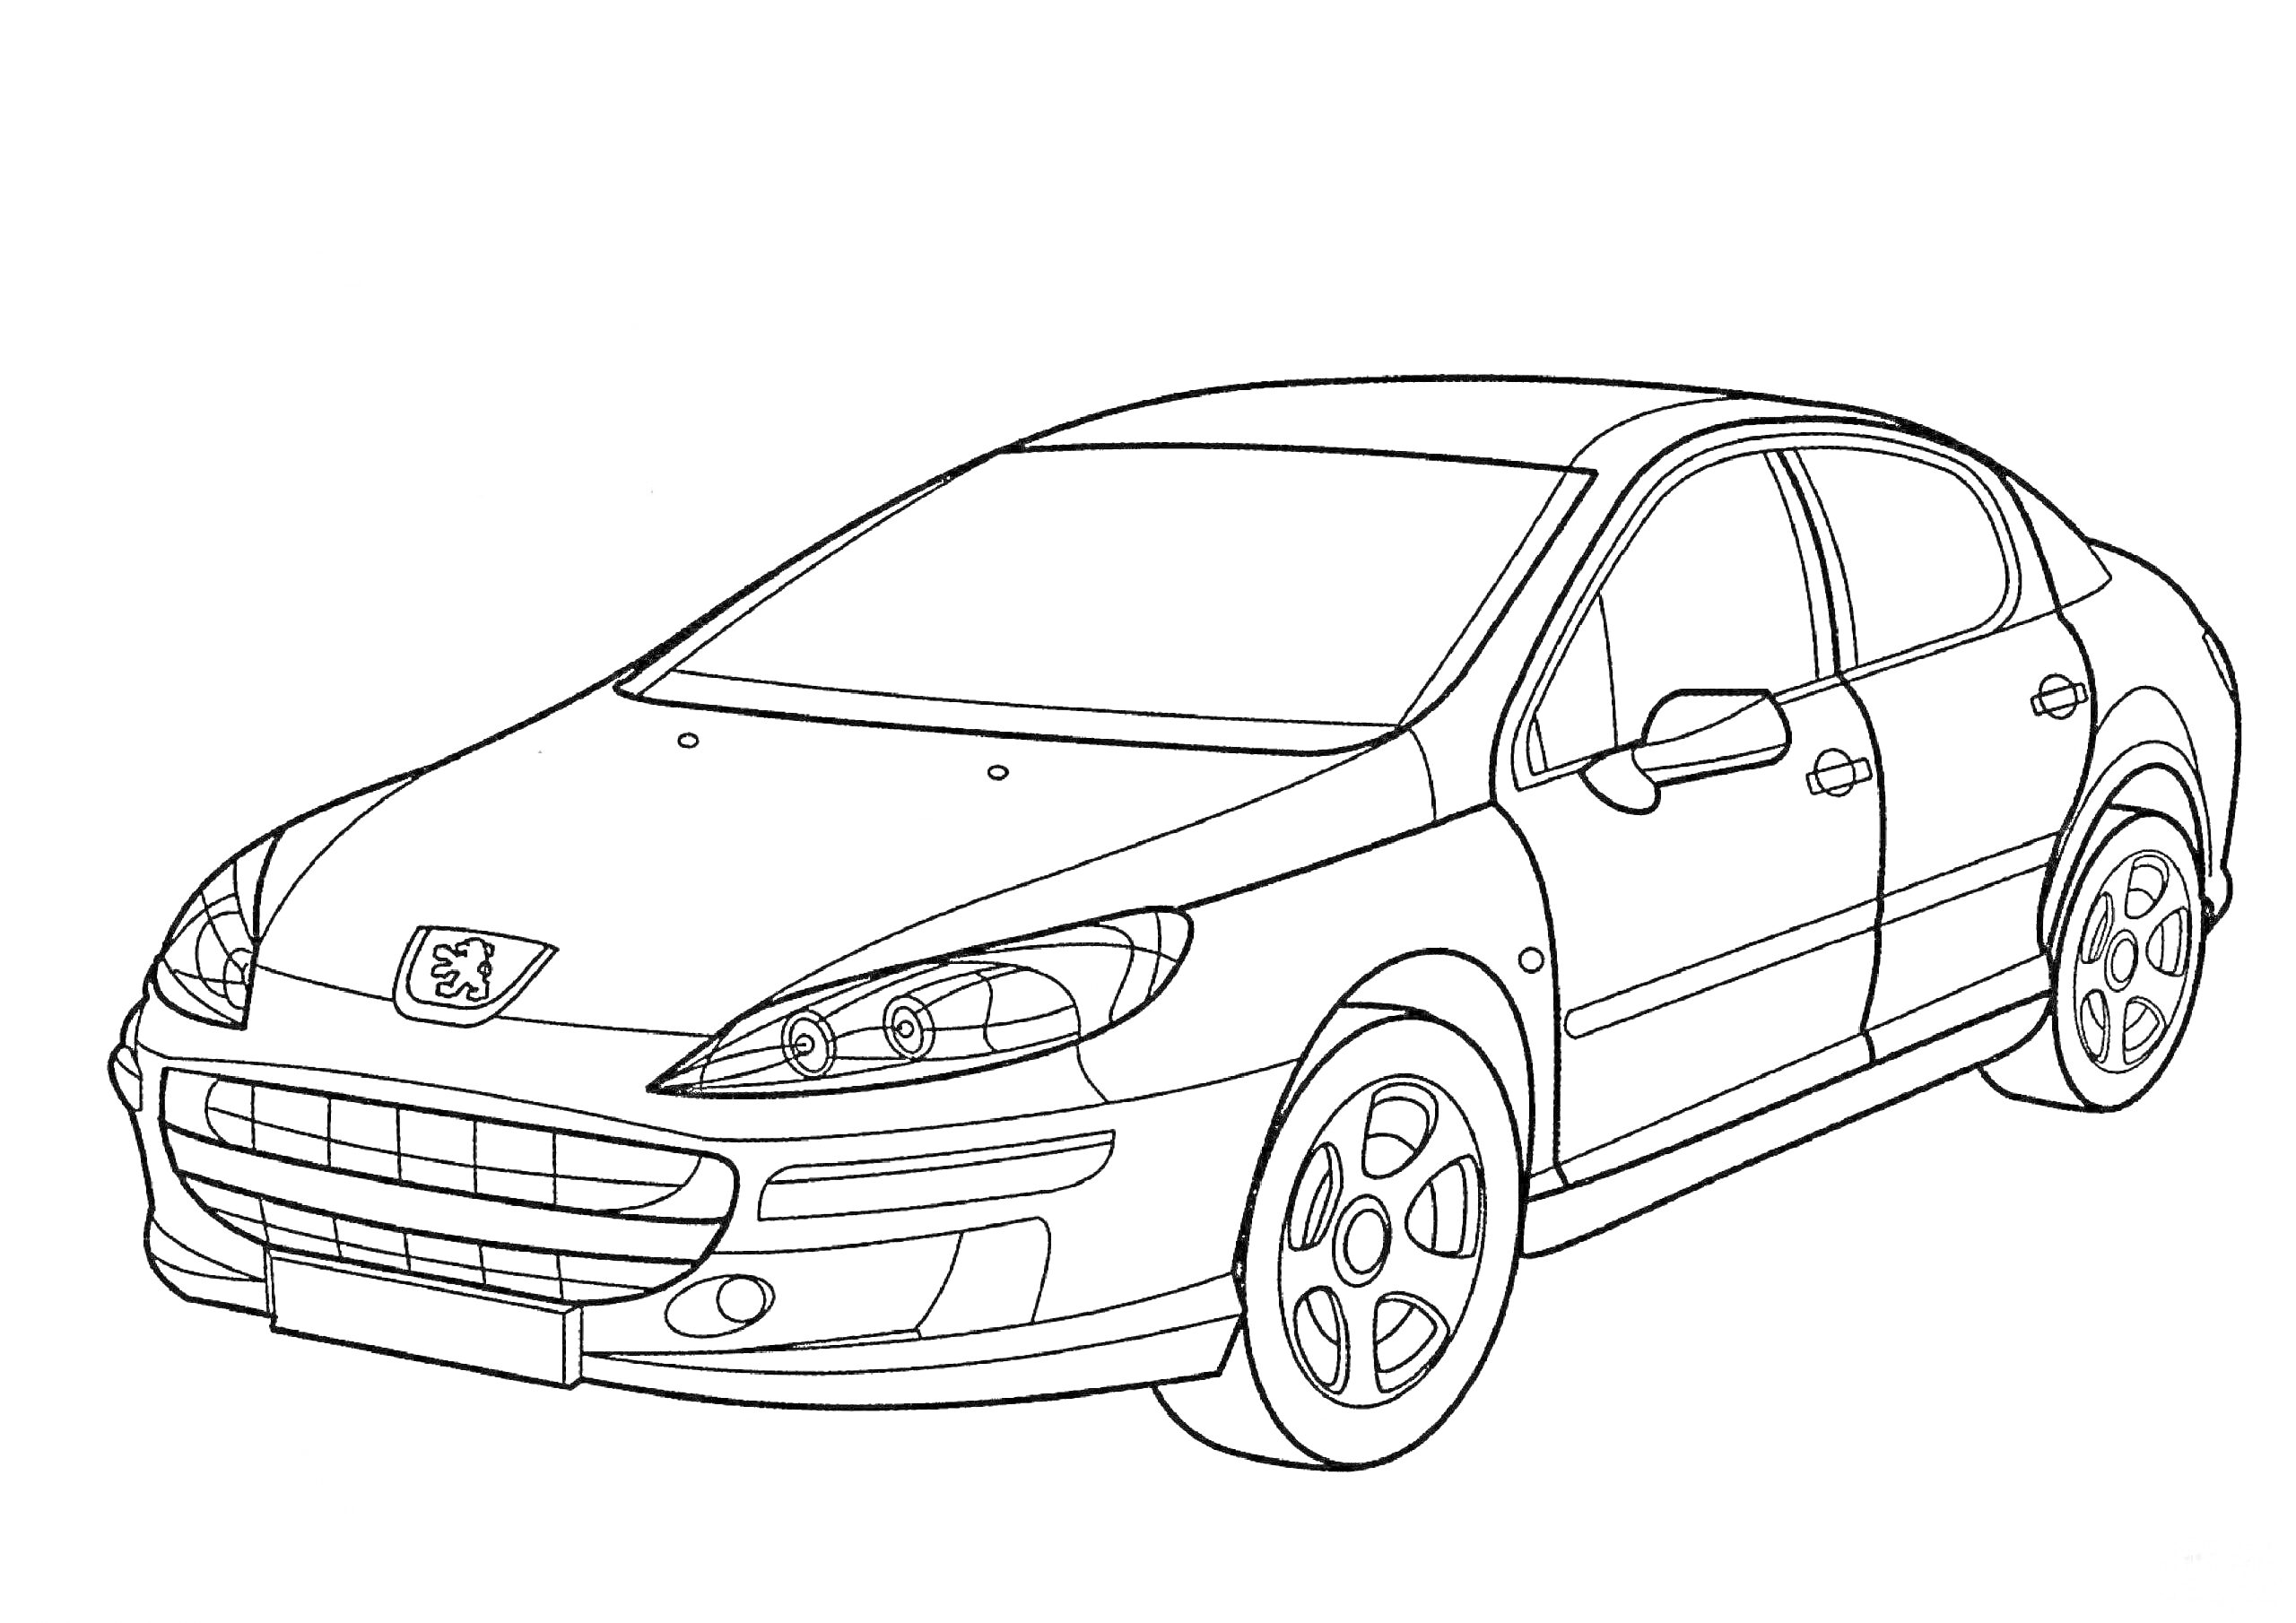 Раскраска Пежо легковой автомобиль с четырьмя дверями, фарами, решеткой радиатора и колесами